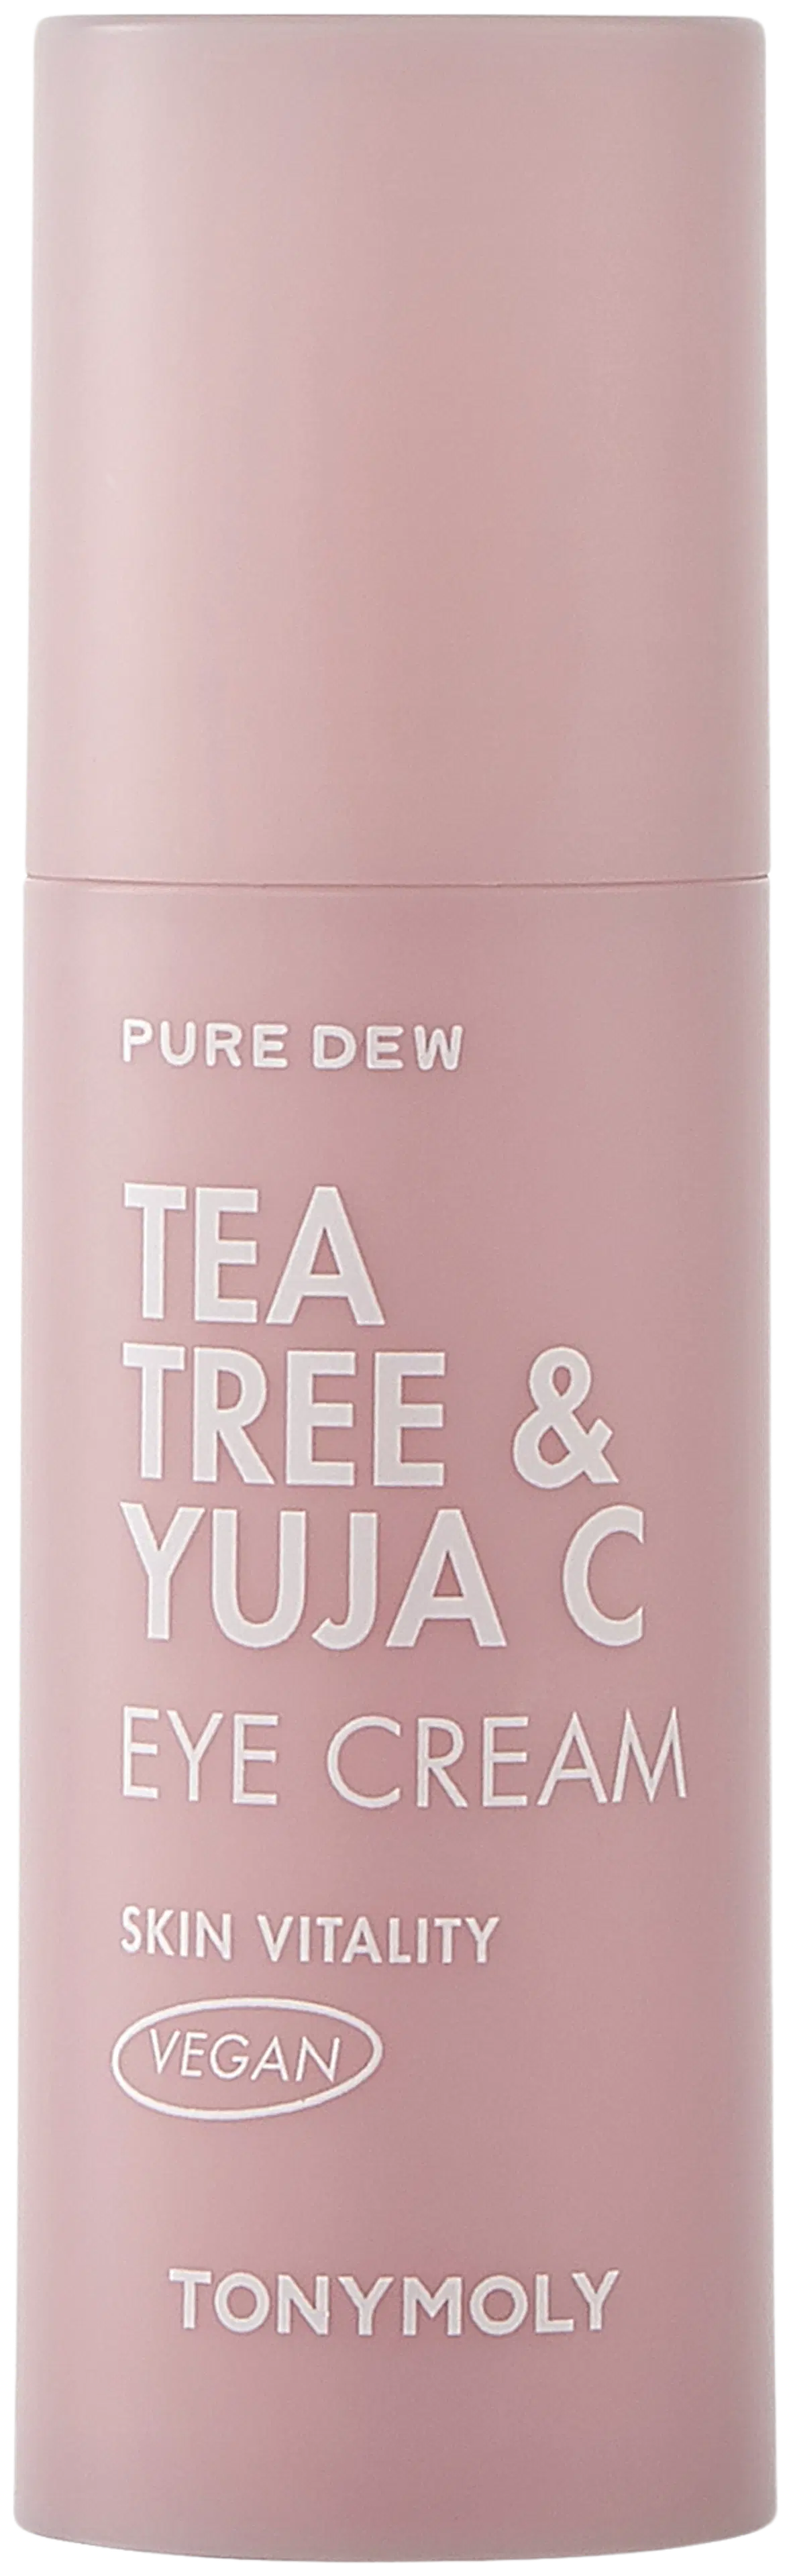 TONYMOLY Pure Dew Tea Tree & Yuja C Vitality Eye Cream silmänympärysvoide 30ml